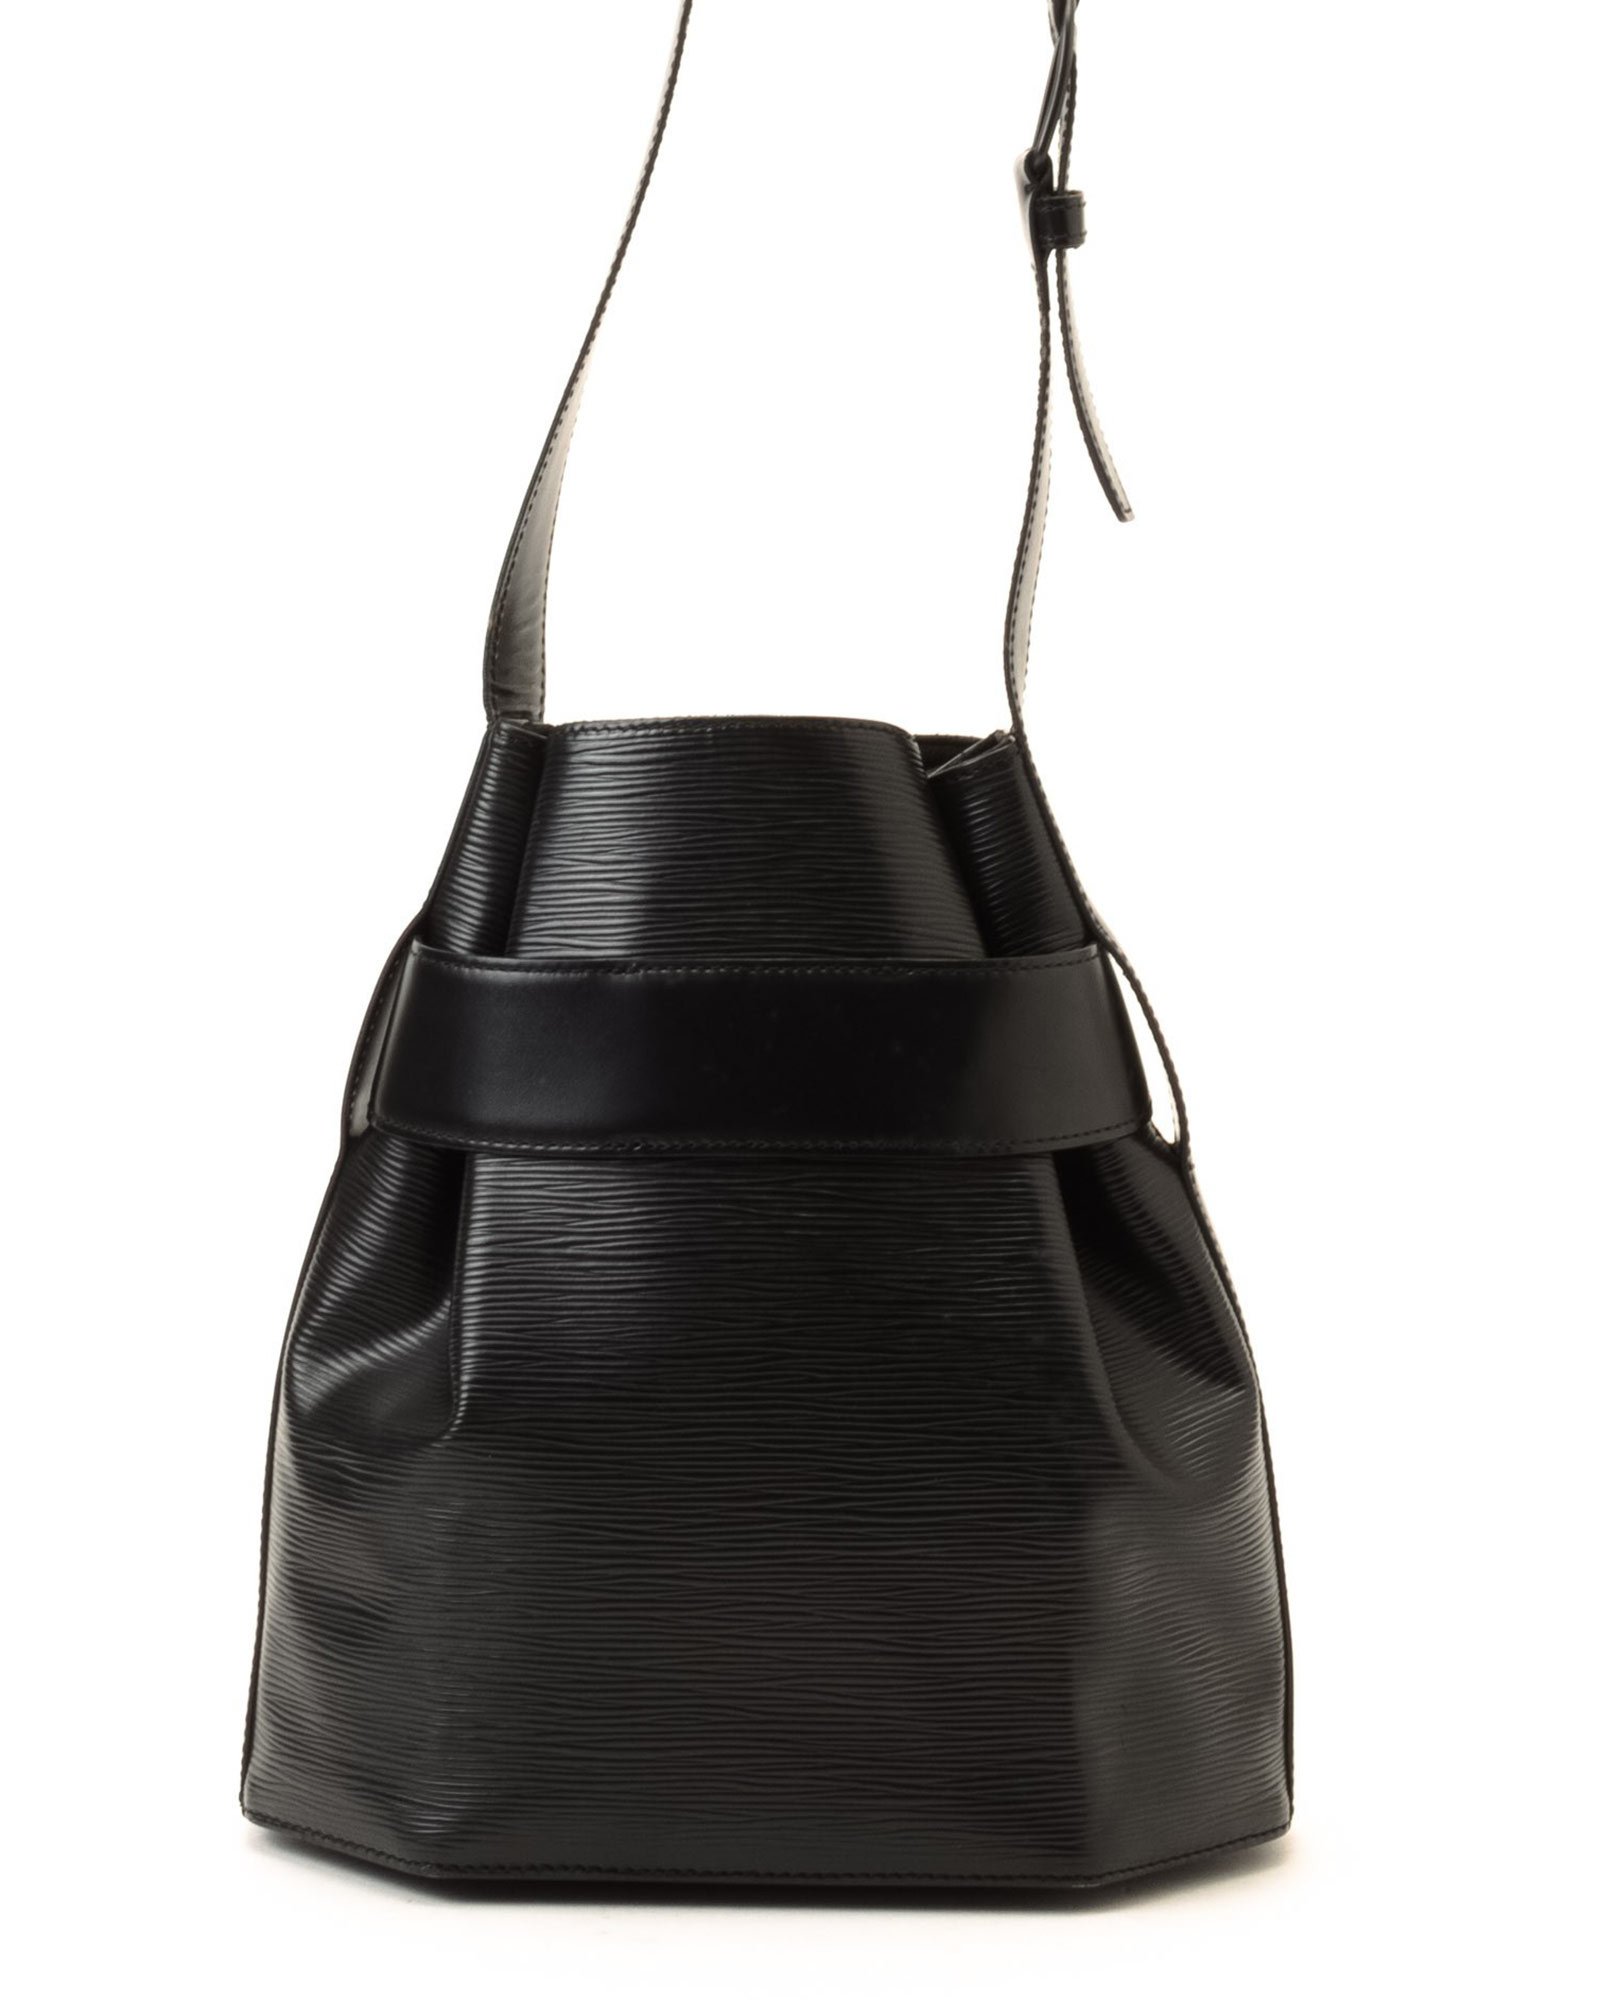 Lyst - Louis Vuitton Black Shoulder Bag - Vintage in Black for Men